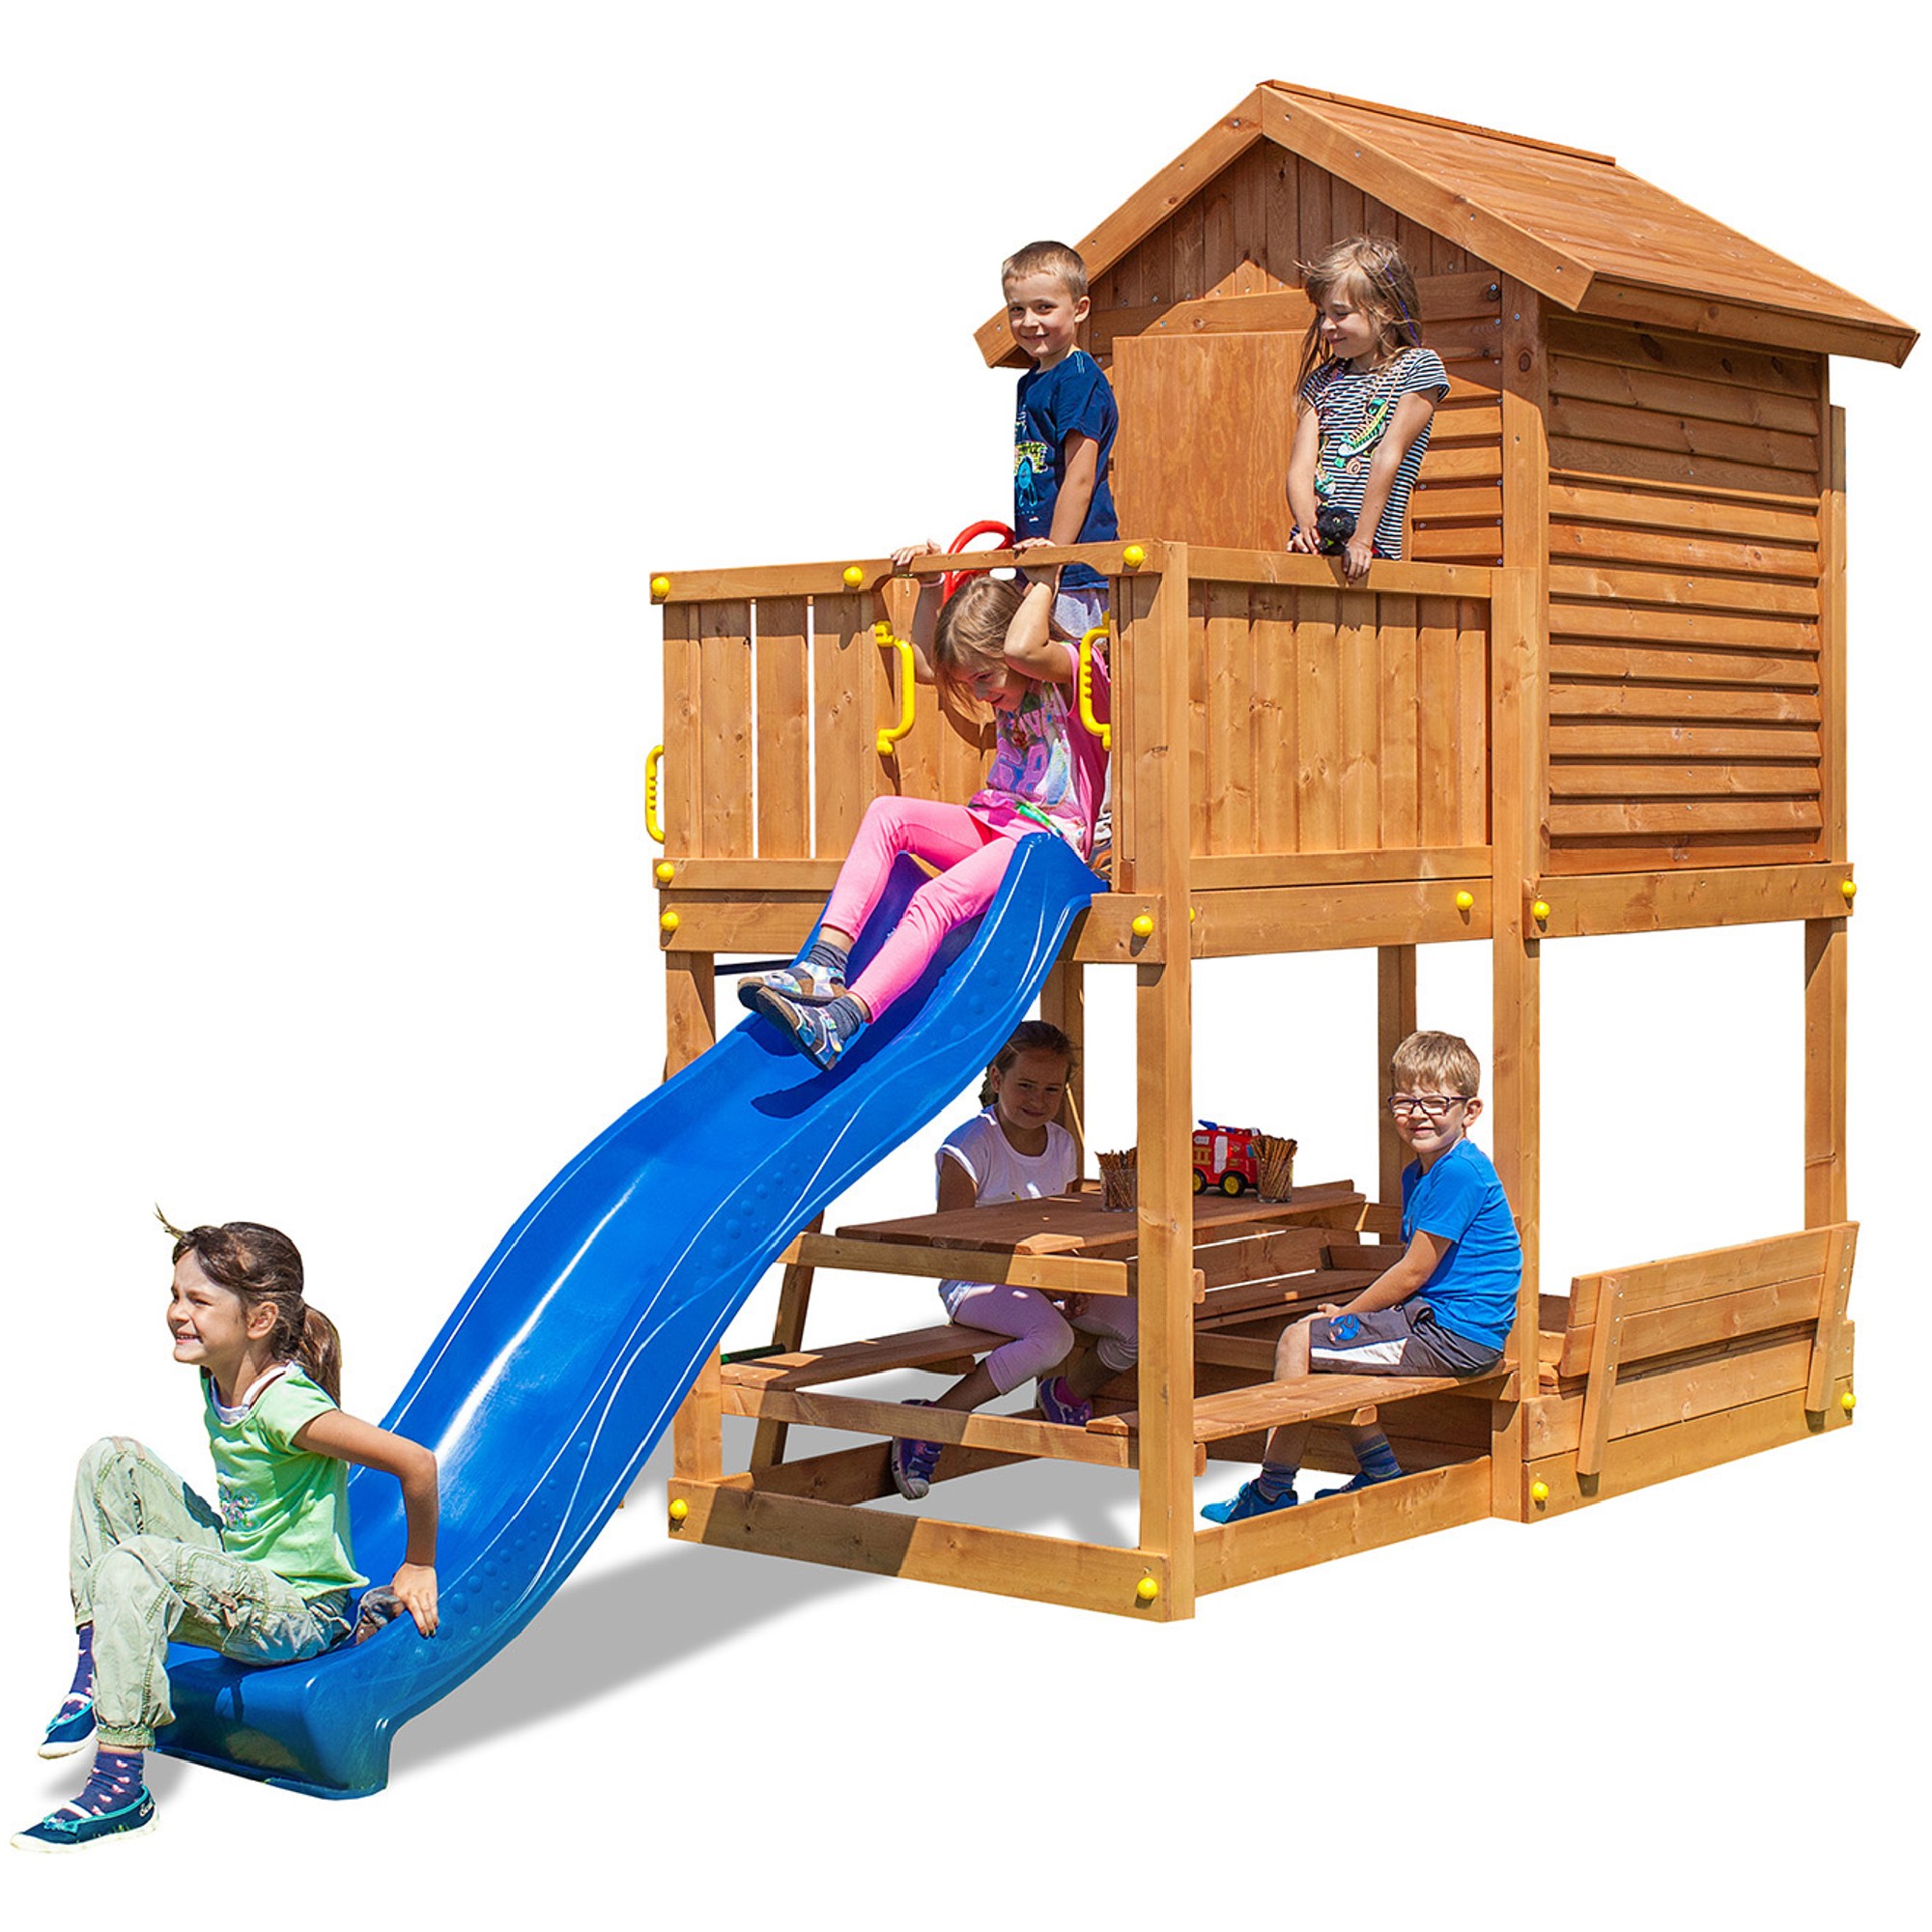 Plac zabaw drewniany ogrodowy MyHouse Free Time Beach domek, zjedalnia, awki, drabinka, kierownica